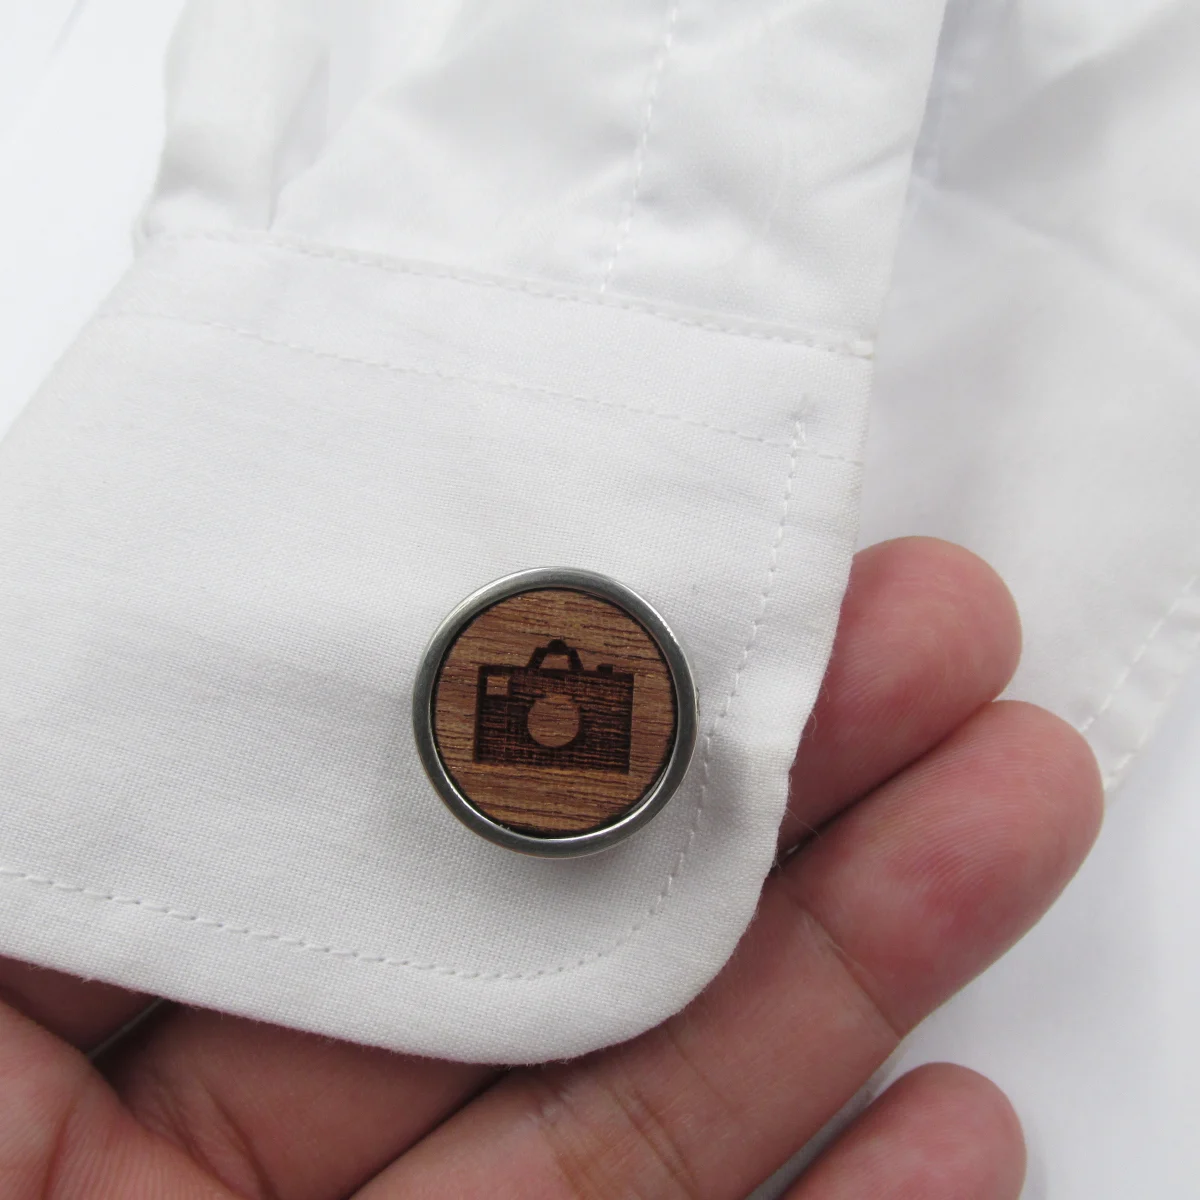 Камера древесины фотограф запонки и зажим для галстука деревянные Запонки Свадебные подарки для мужчин Муж папа